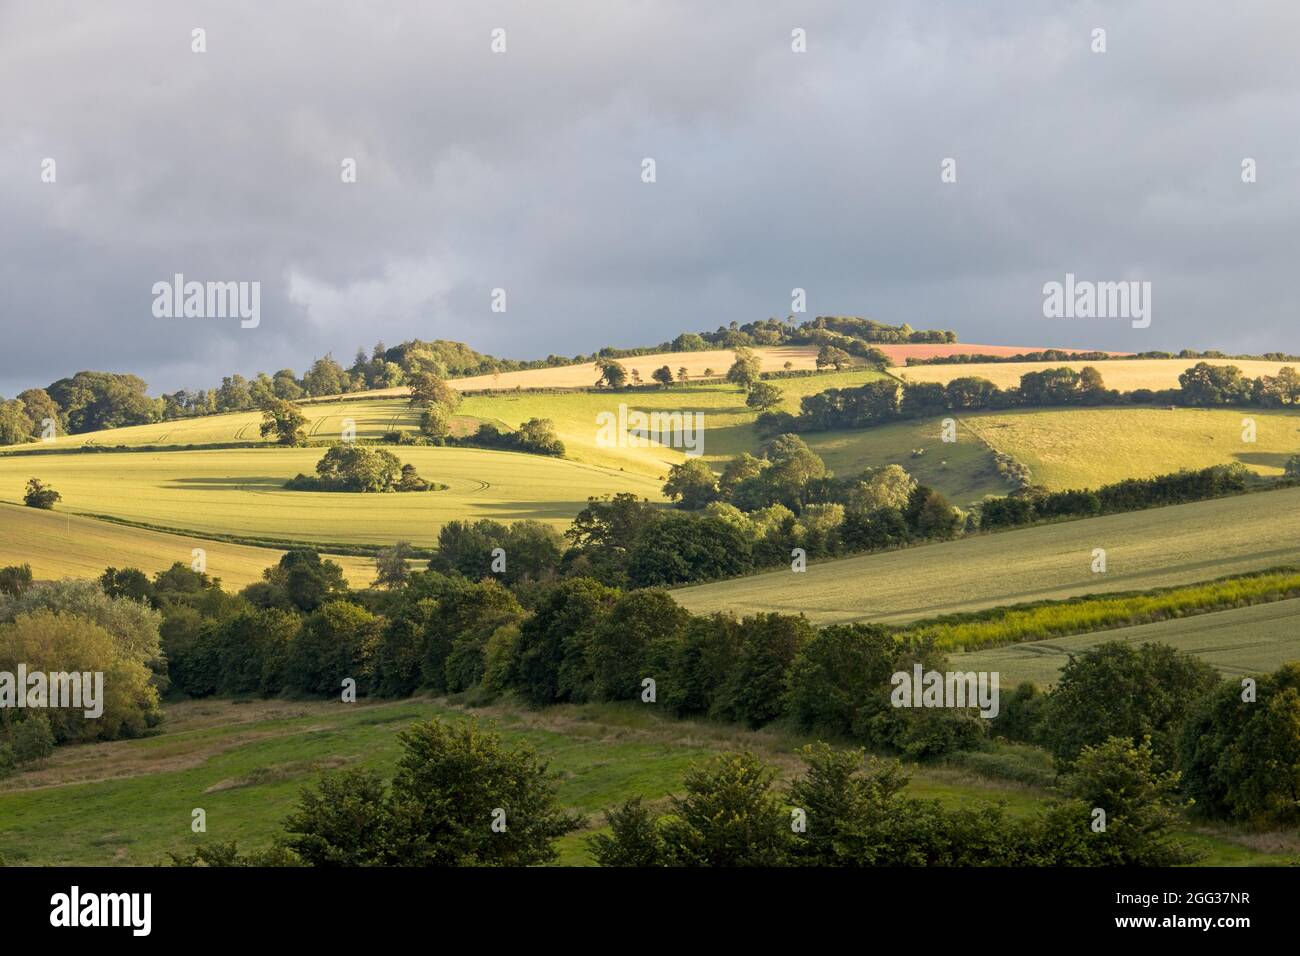 Una vista di terreni agricoli inglesi ondulati nella luce notturna di basso livello con un cielo grigio molto nuvoloso. Luce del sole sui campi. Foto Stock